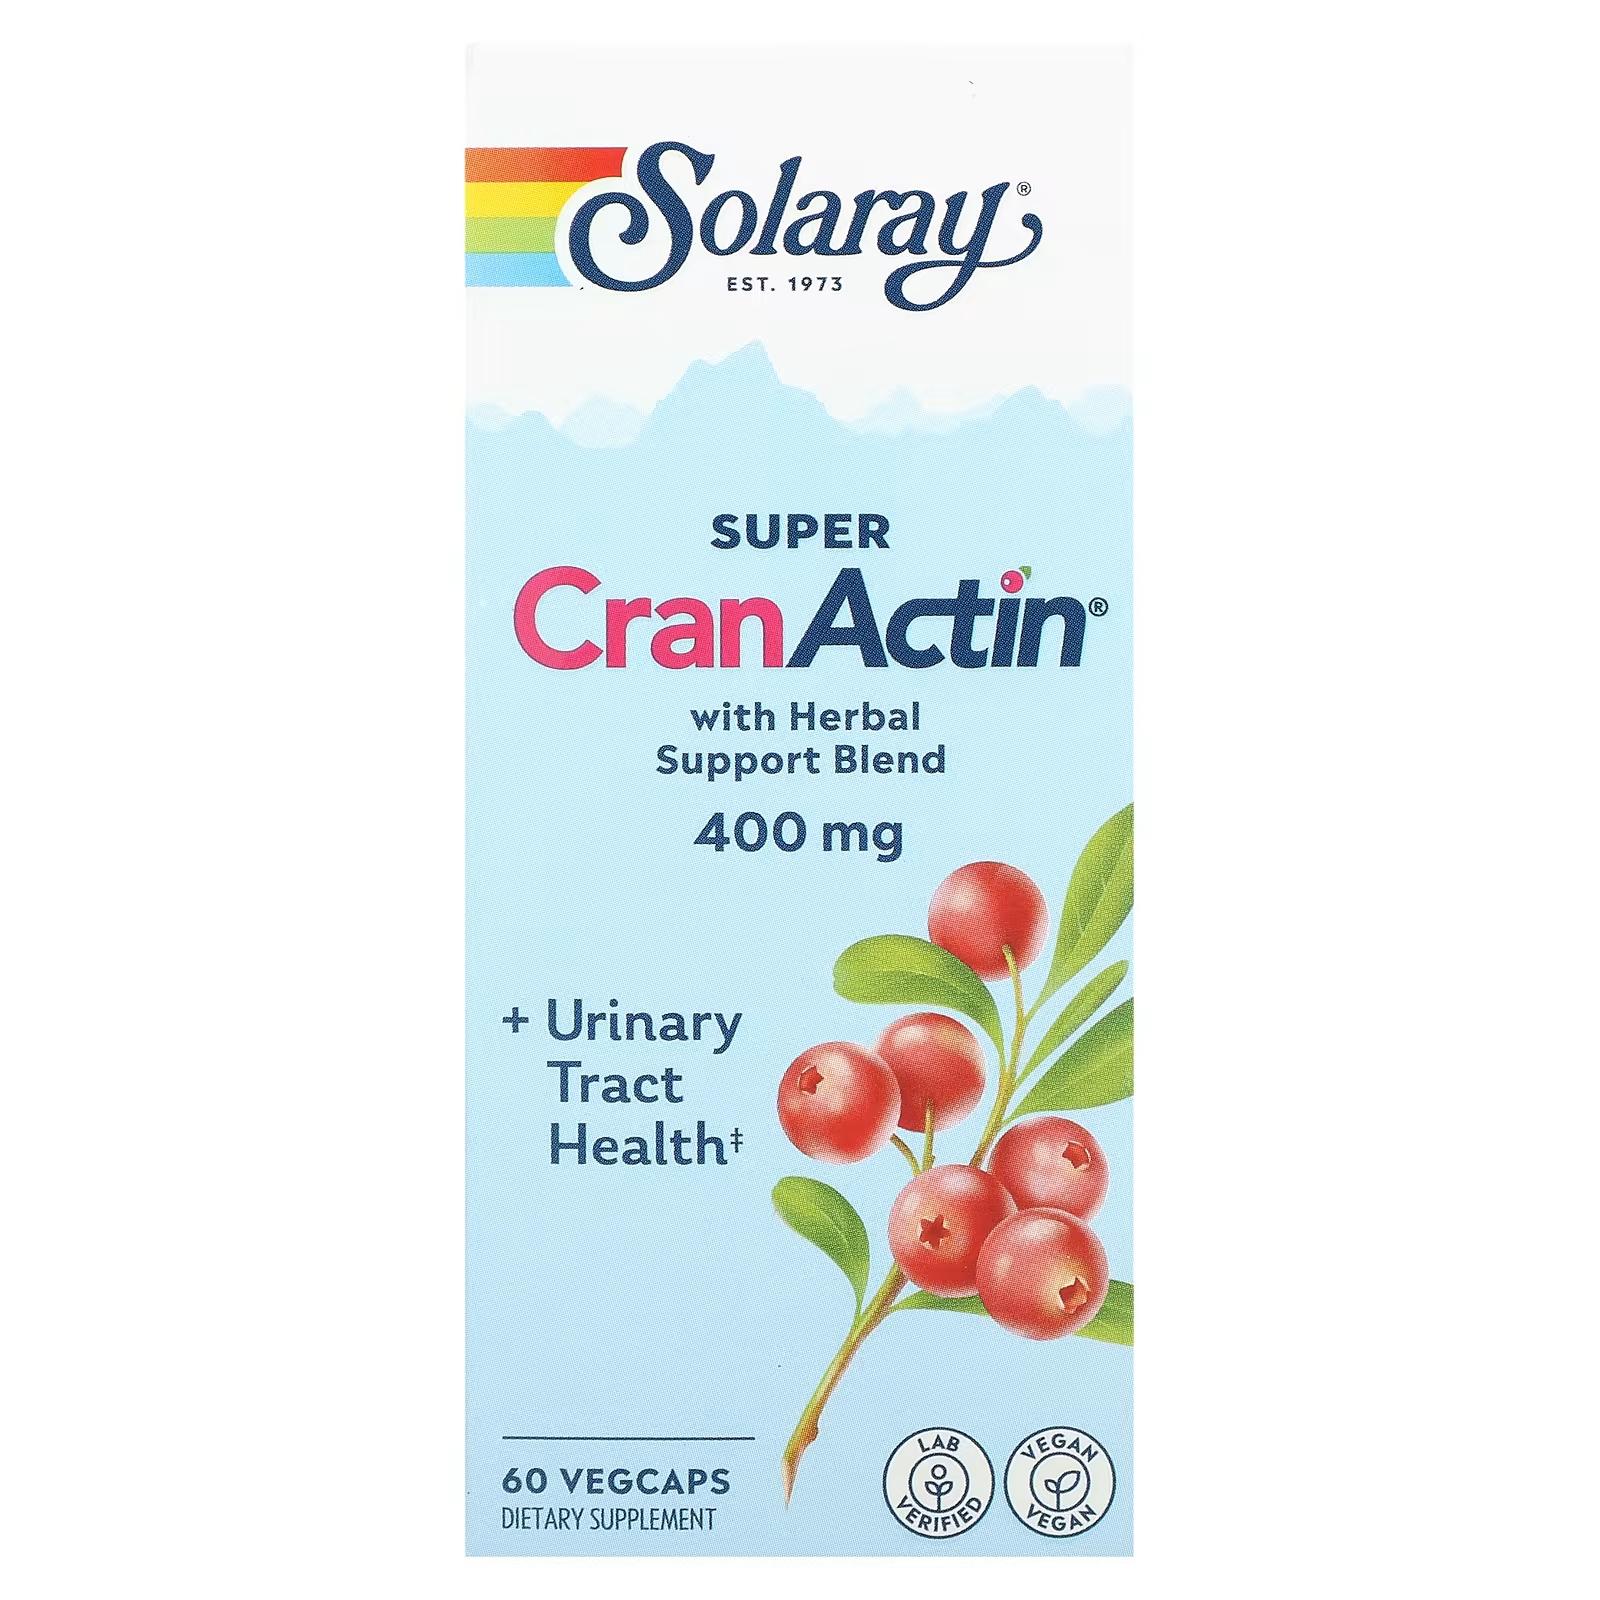 Solaray Super CranActin со смесью травяной поддержки 400 мг 60 растительных капсул solaray super cranactin со смесью травяной поддержки 400 мг 60 растительных капсул